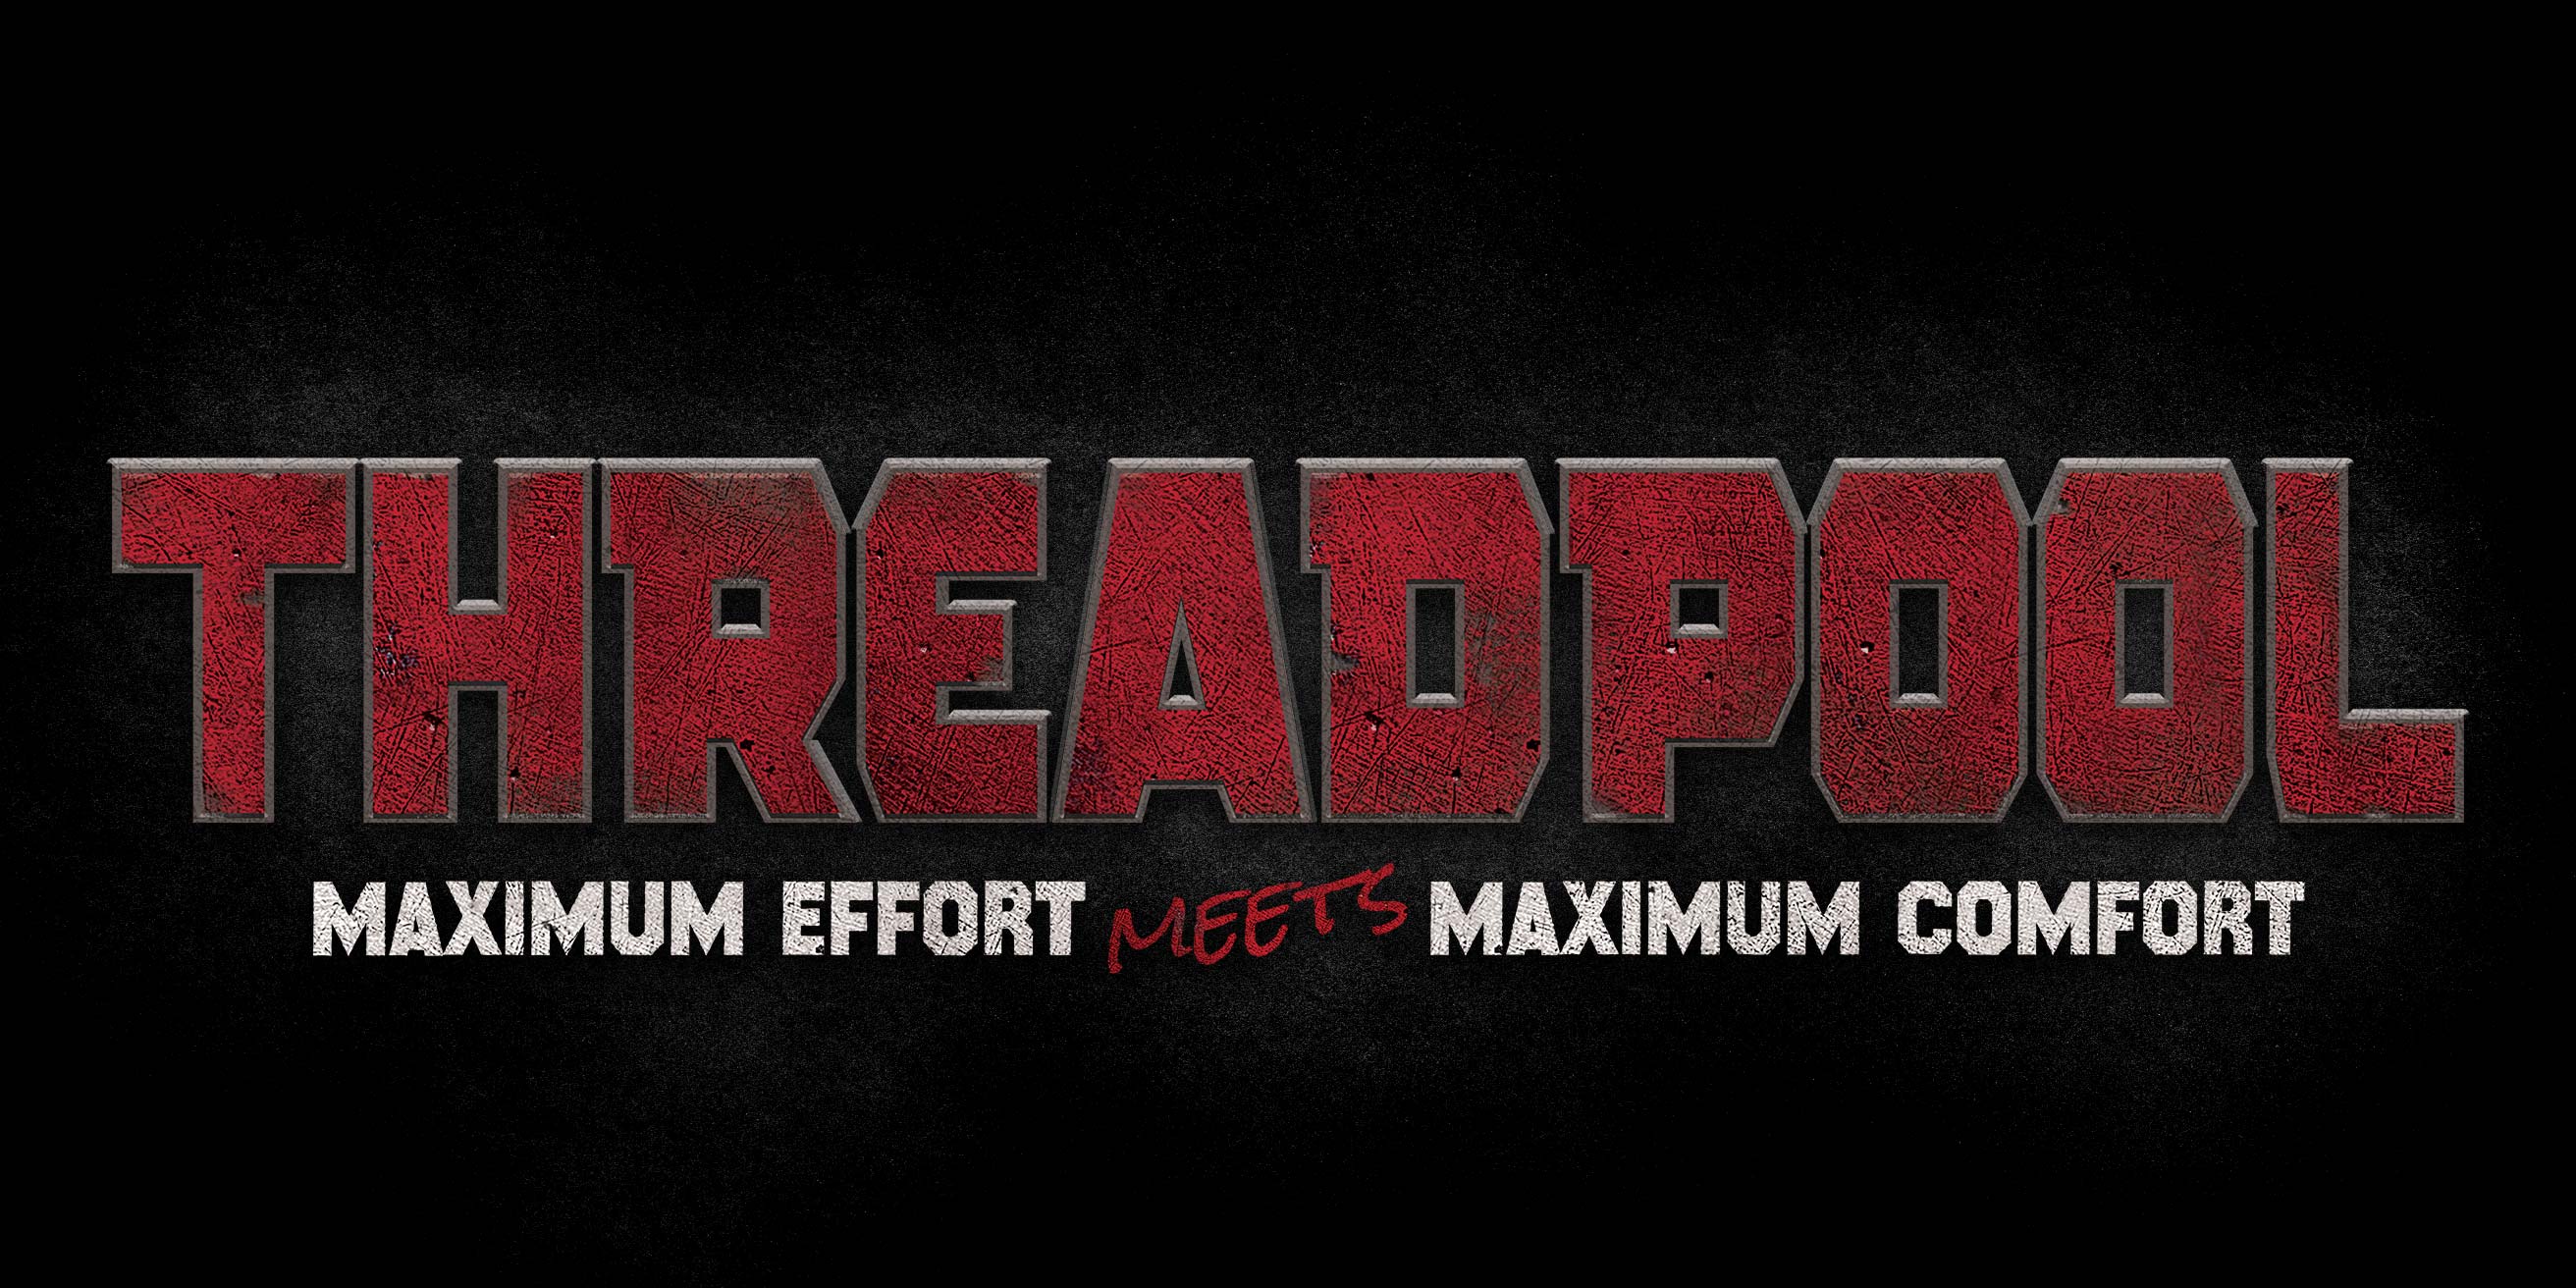 Threadpool. Maximum Effort Meets Maximum Comfort